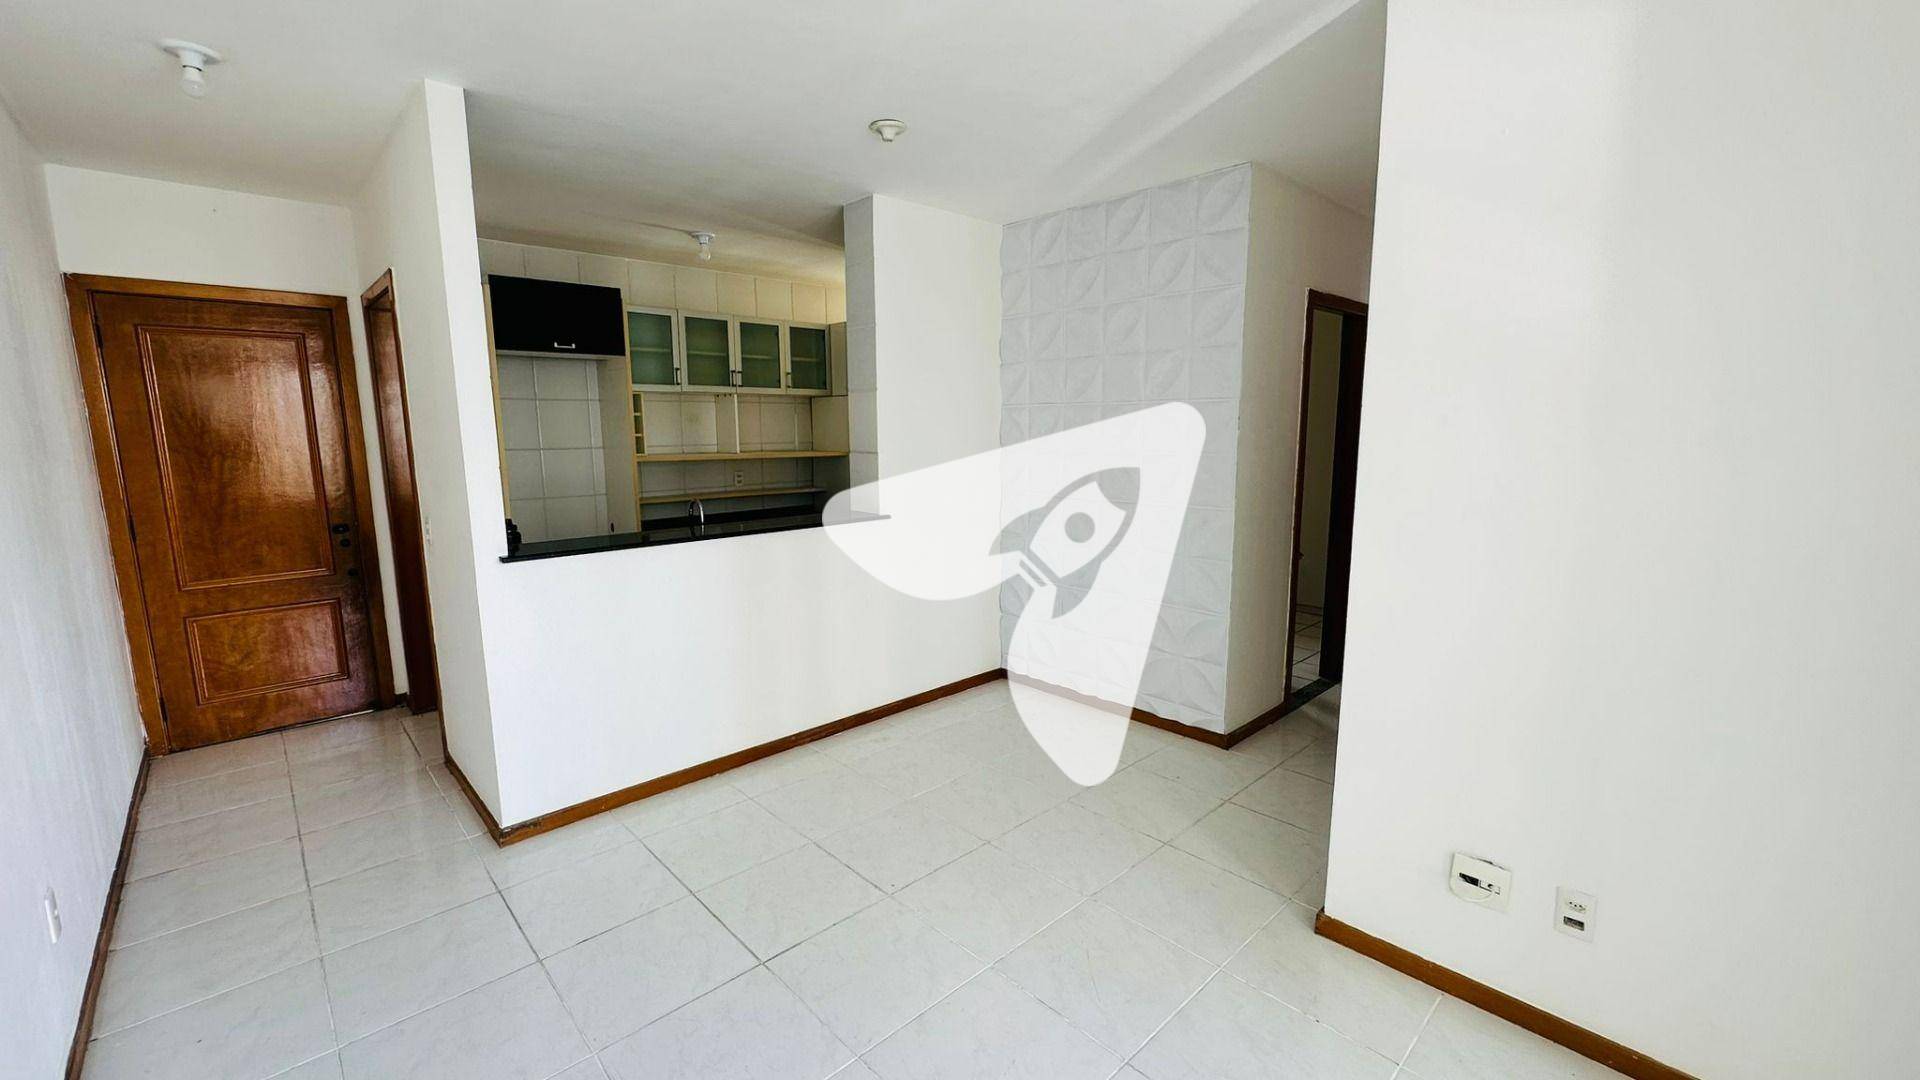 Apartamento, 3 quartos, 70 m² - Foto 3